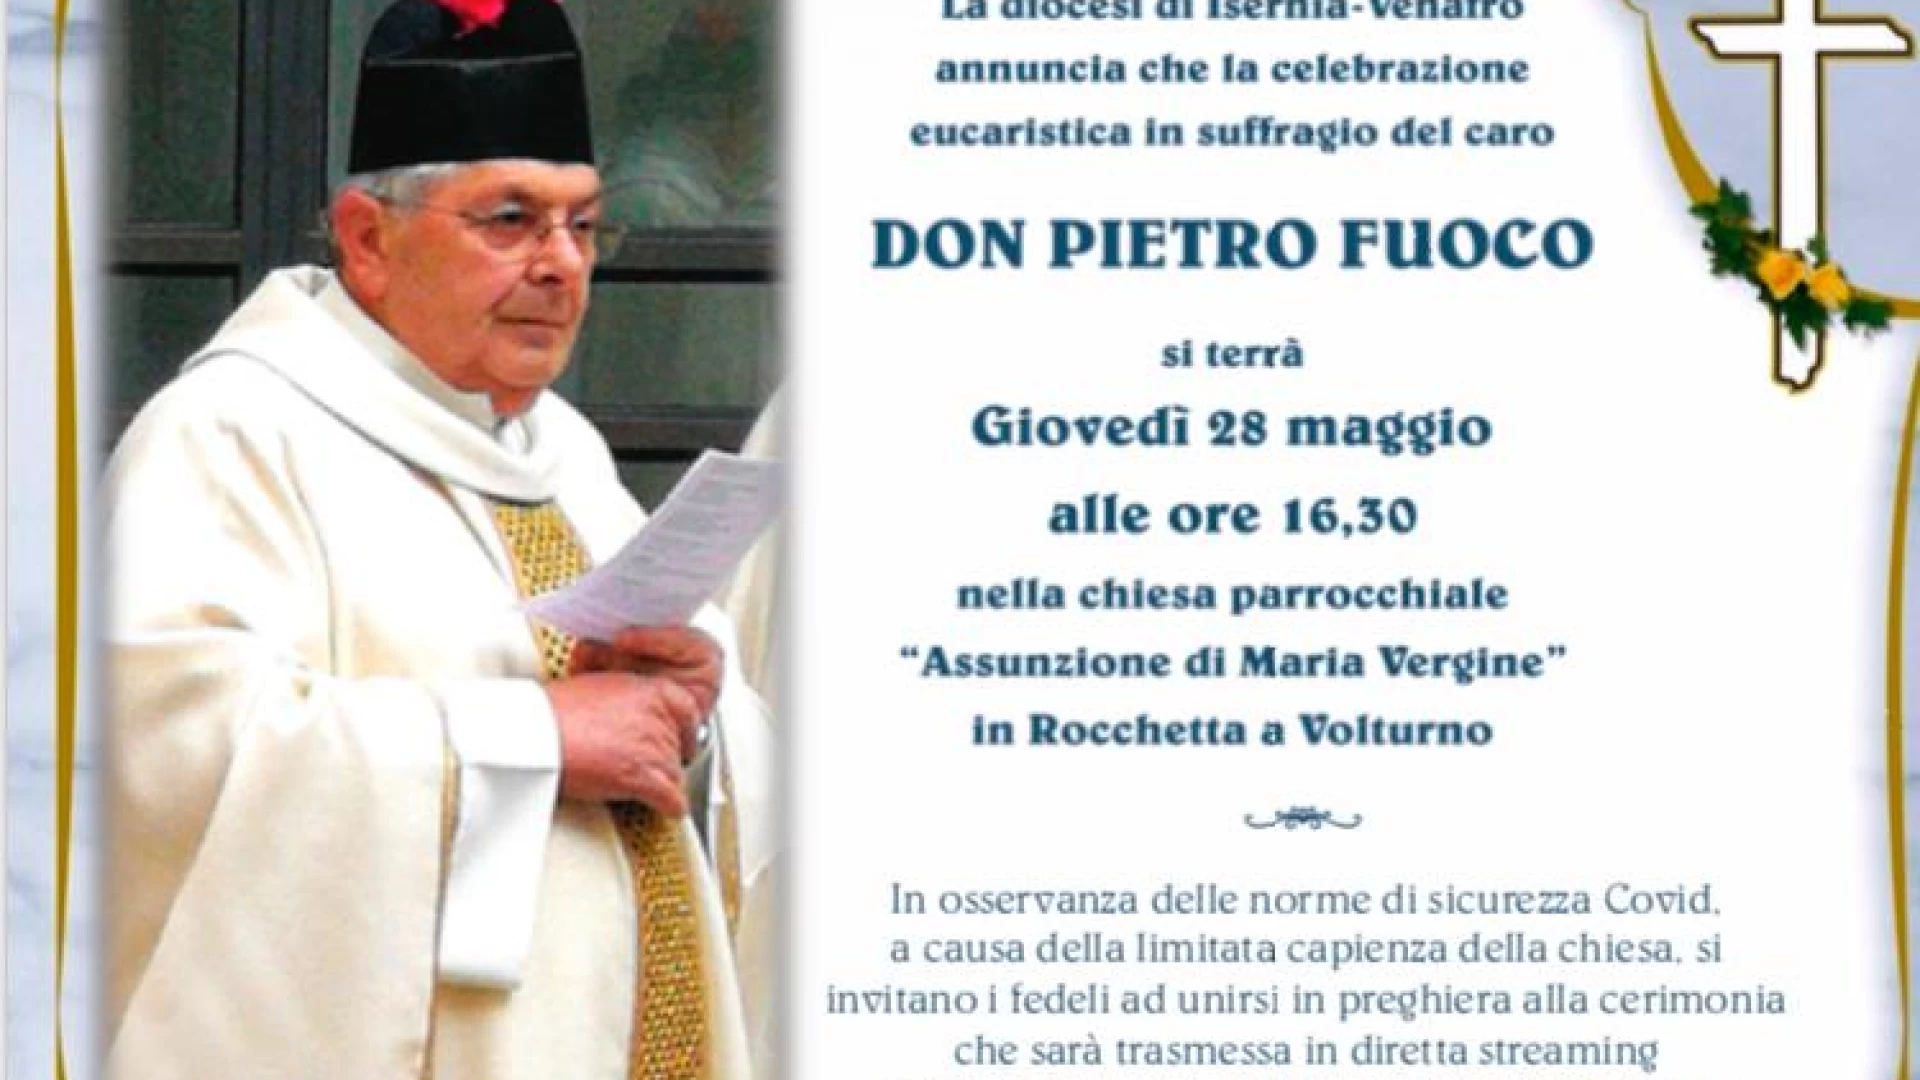 Rocchetta a Volturno: oggi pomeriggio la santa messa in suffragio di Don Pietro Fuoco sul canale Youtube della Diocesi di Isernia-Venafro.